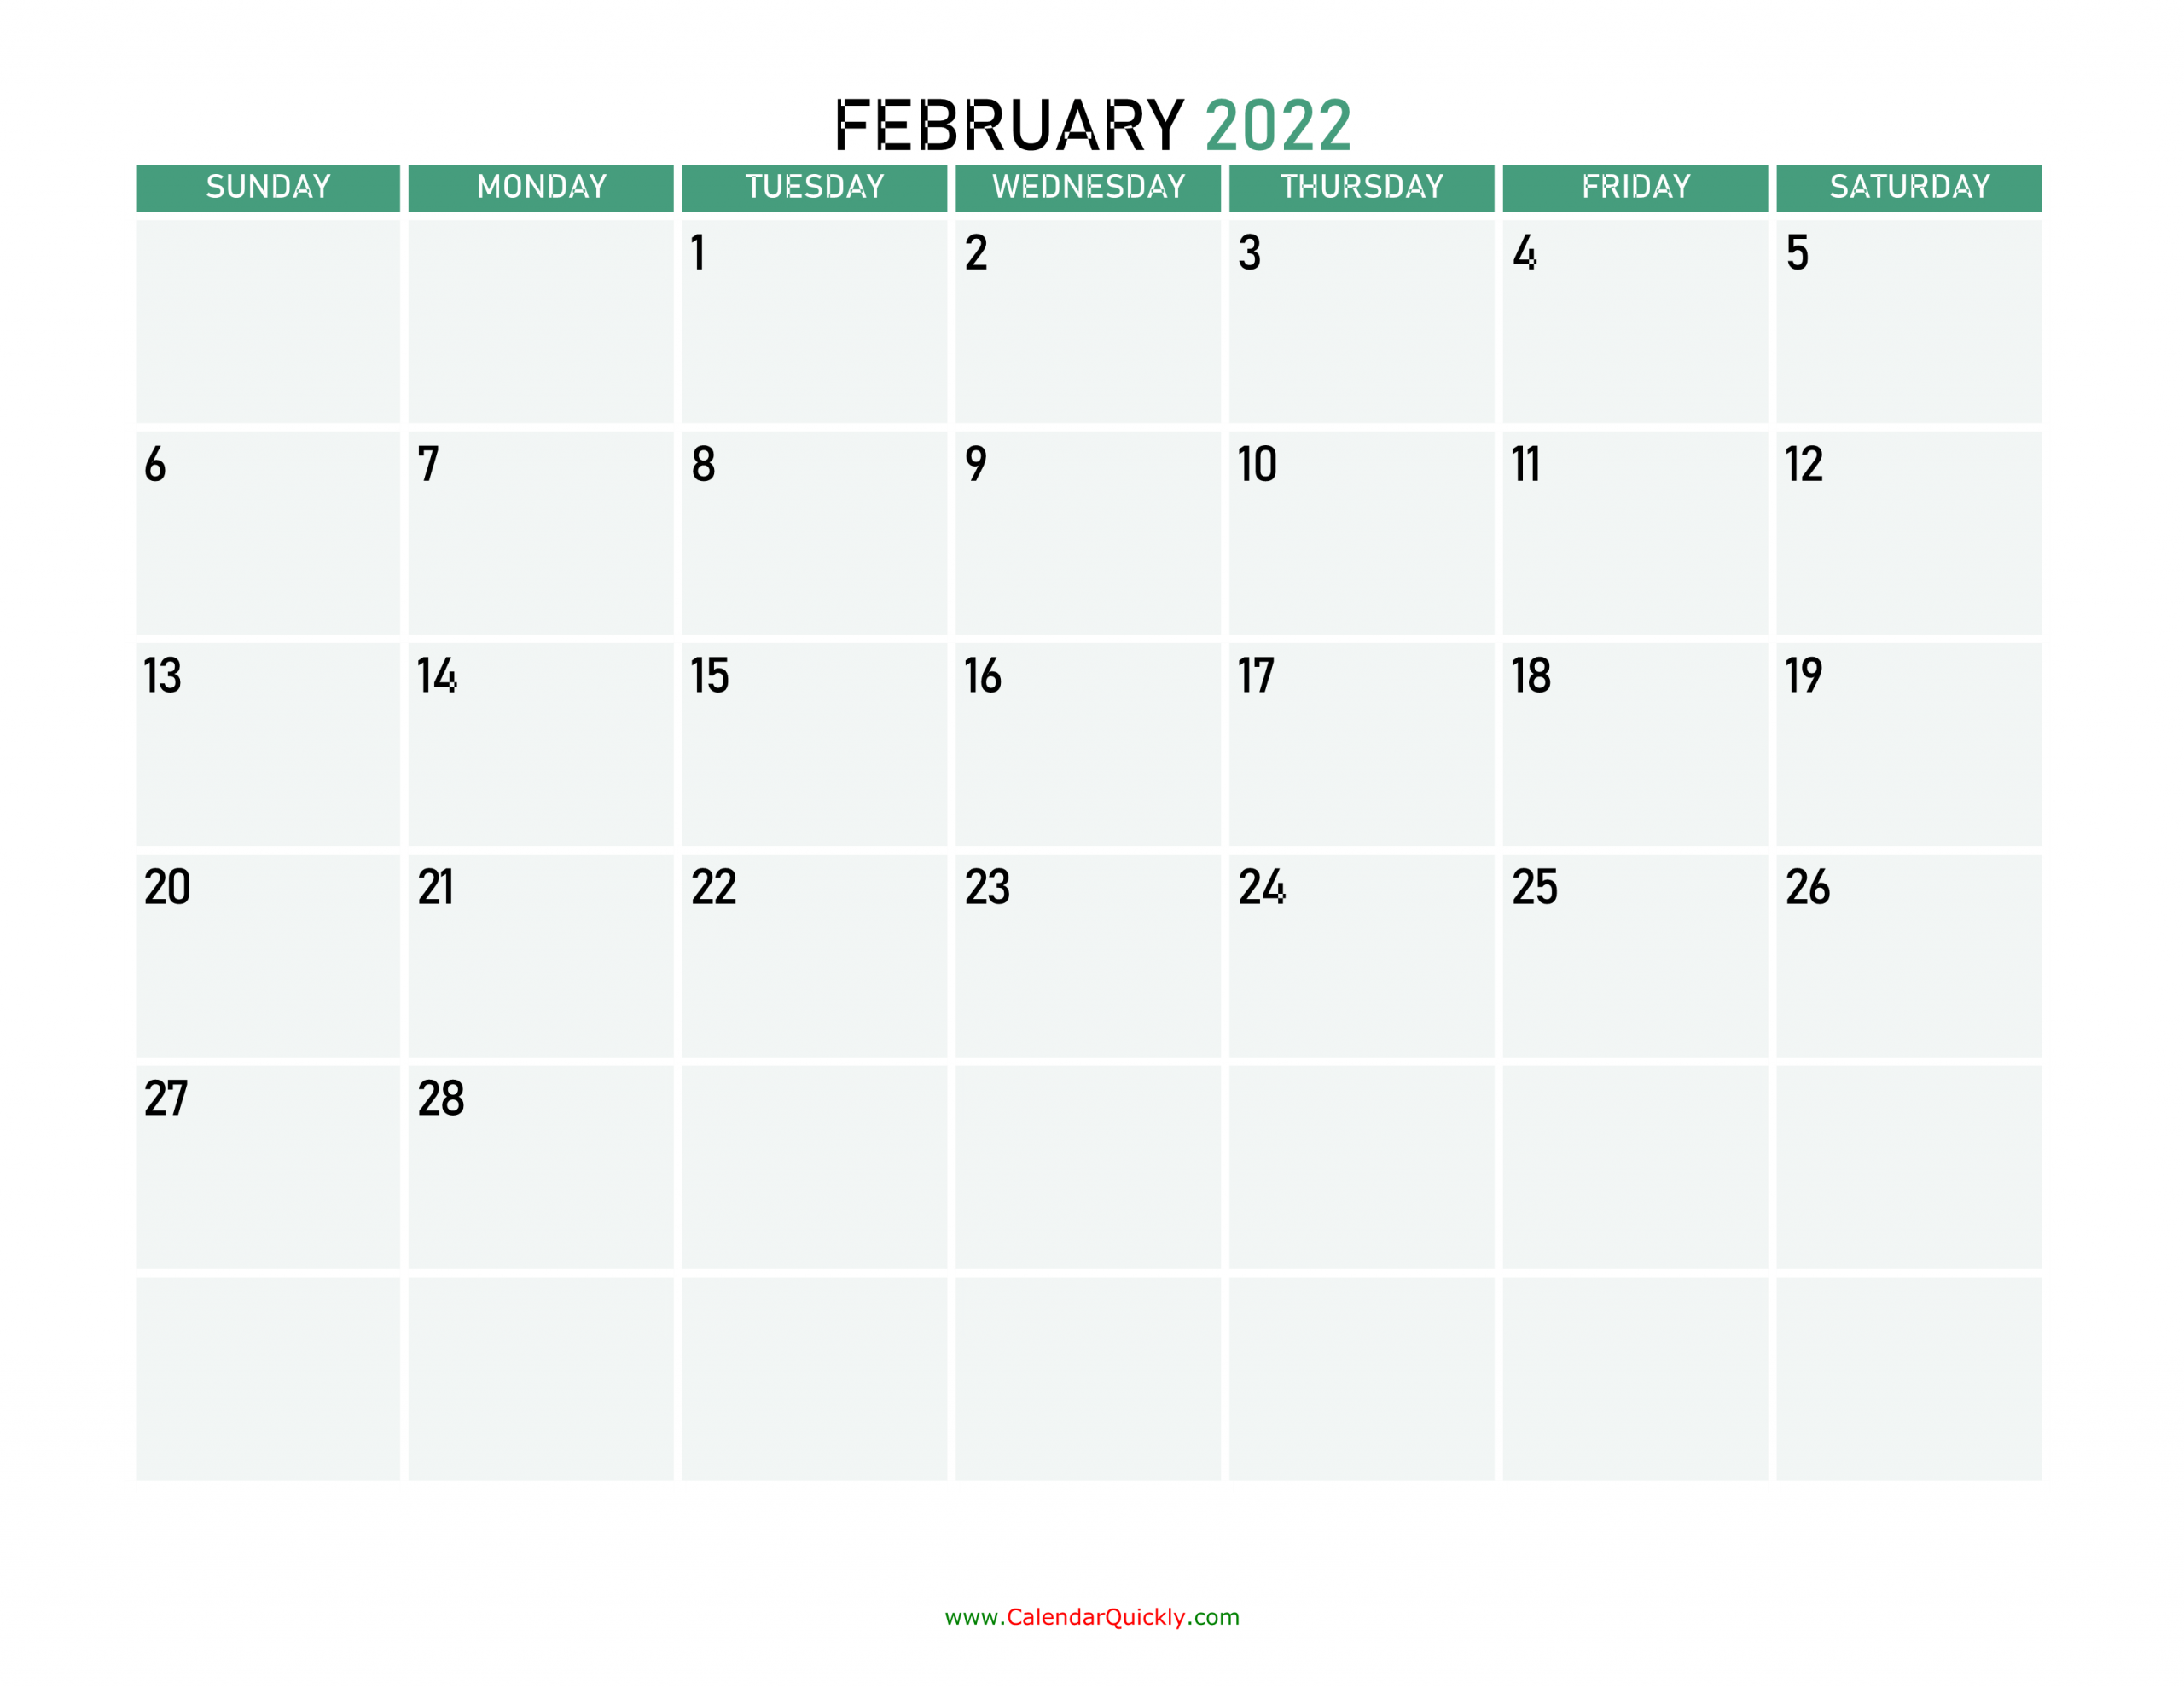 February 2022 Printable Calendar | Calendar Quickly